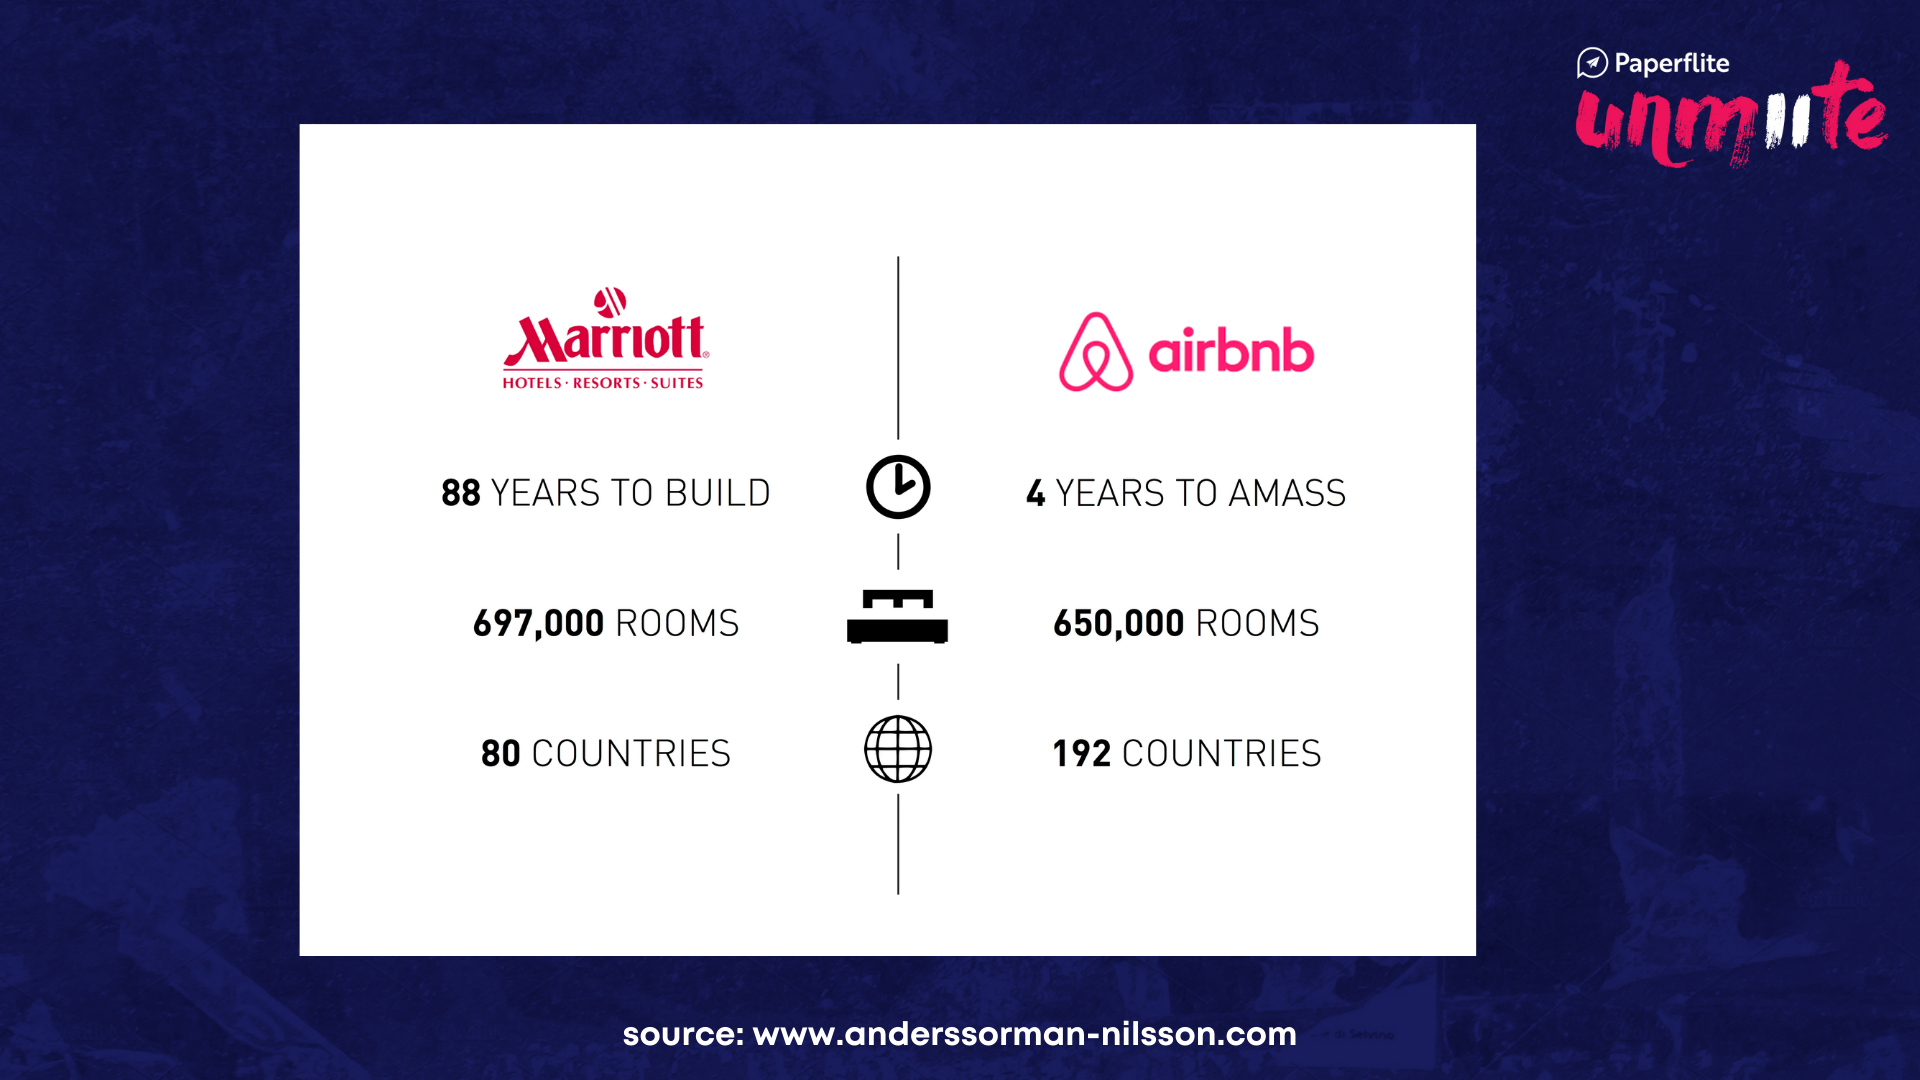 Marriott versus Airbnb - by Paperflite